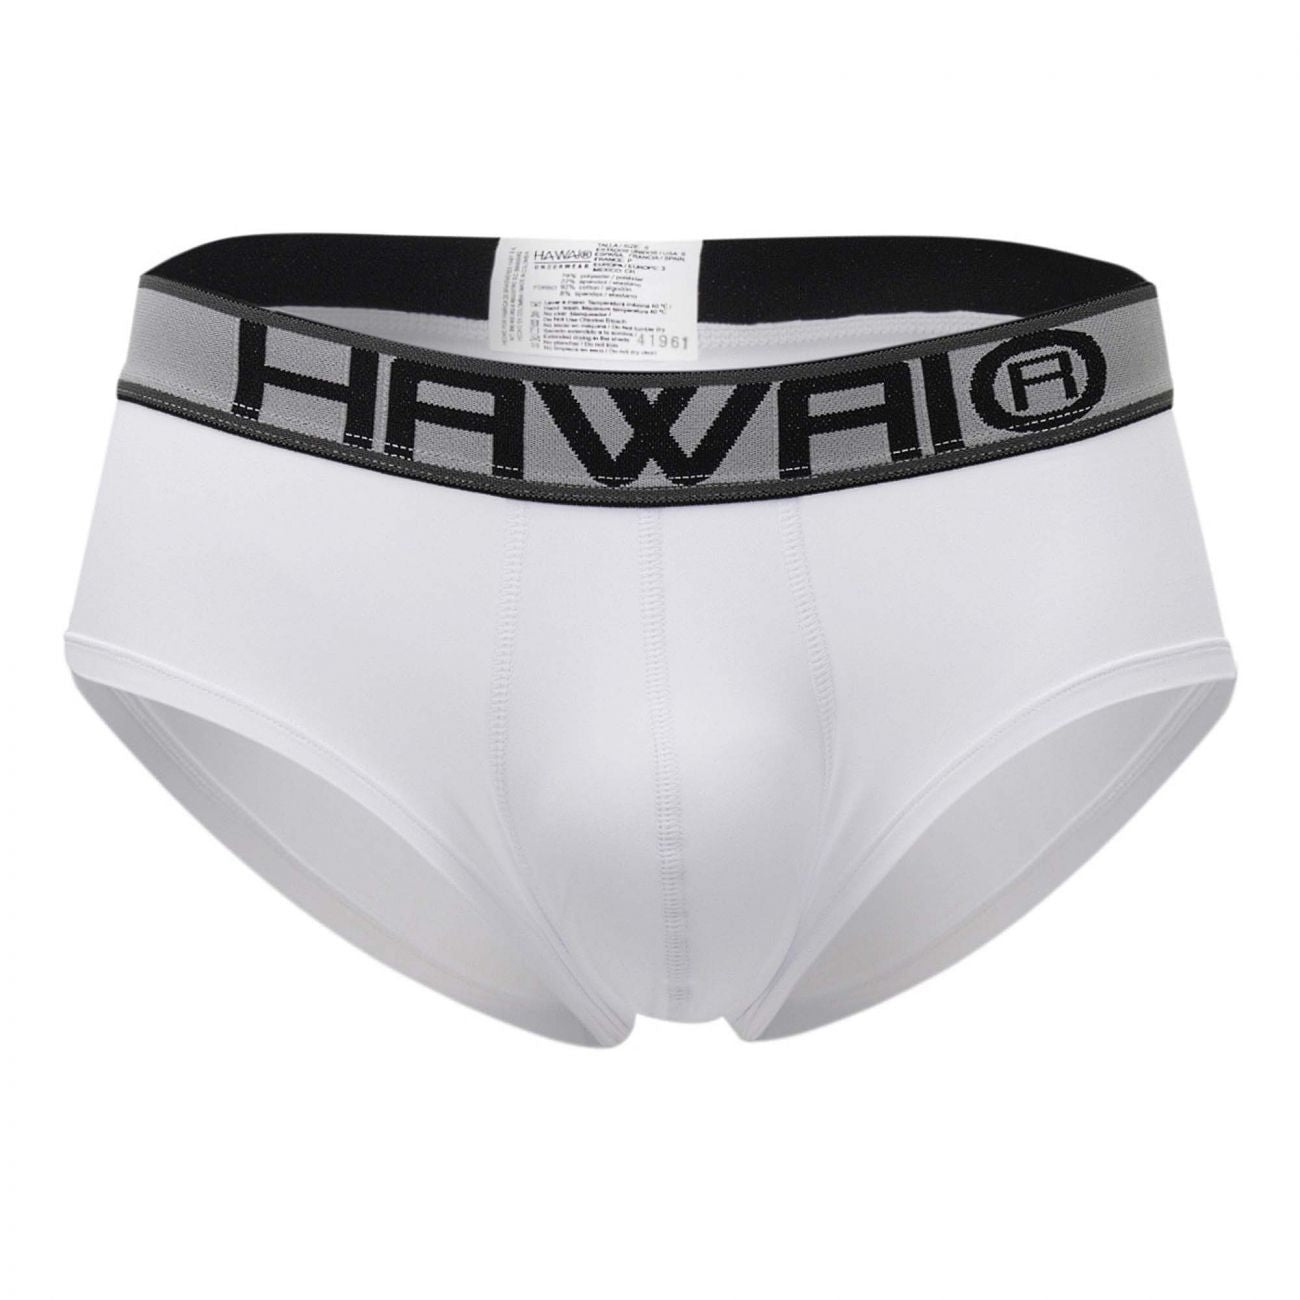 HAWAI 41961 Briefs White